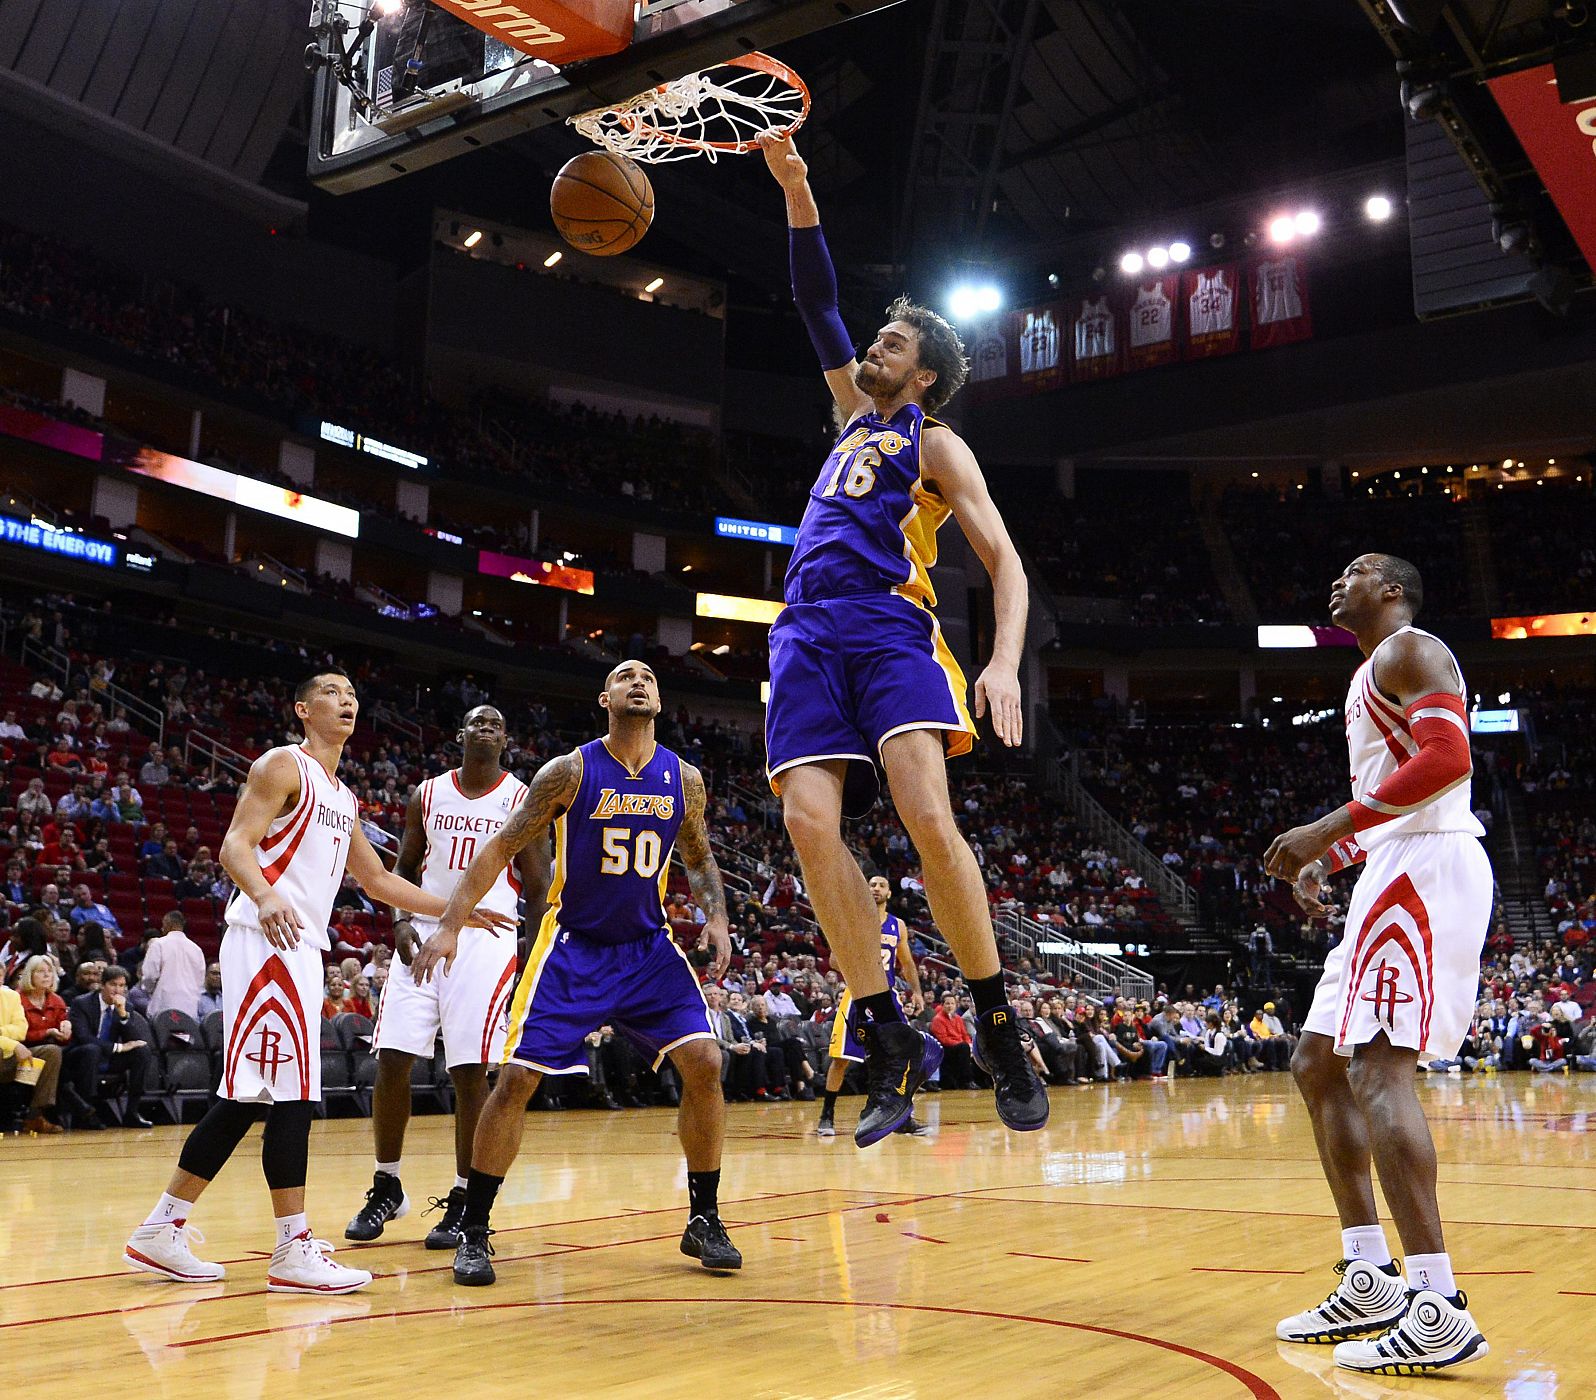 El español Pau Gasol de los Lakers encesta ante los Rockets.